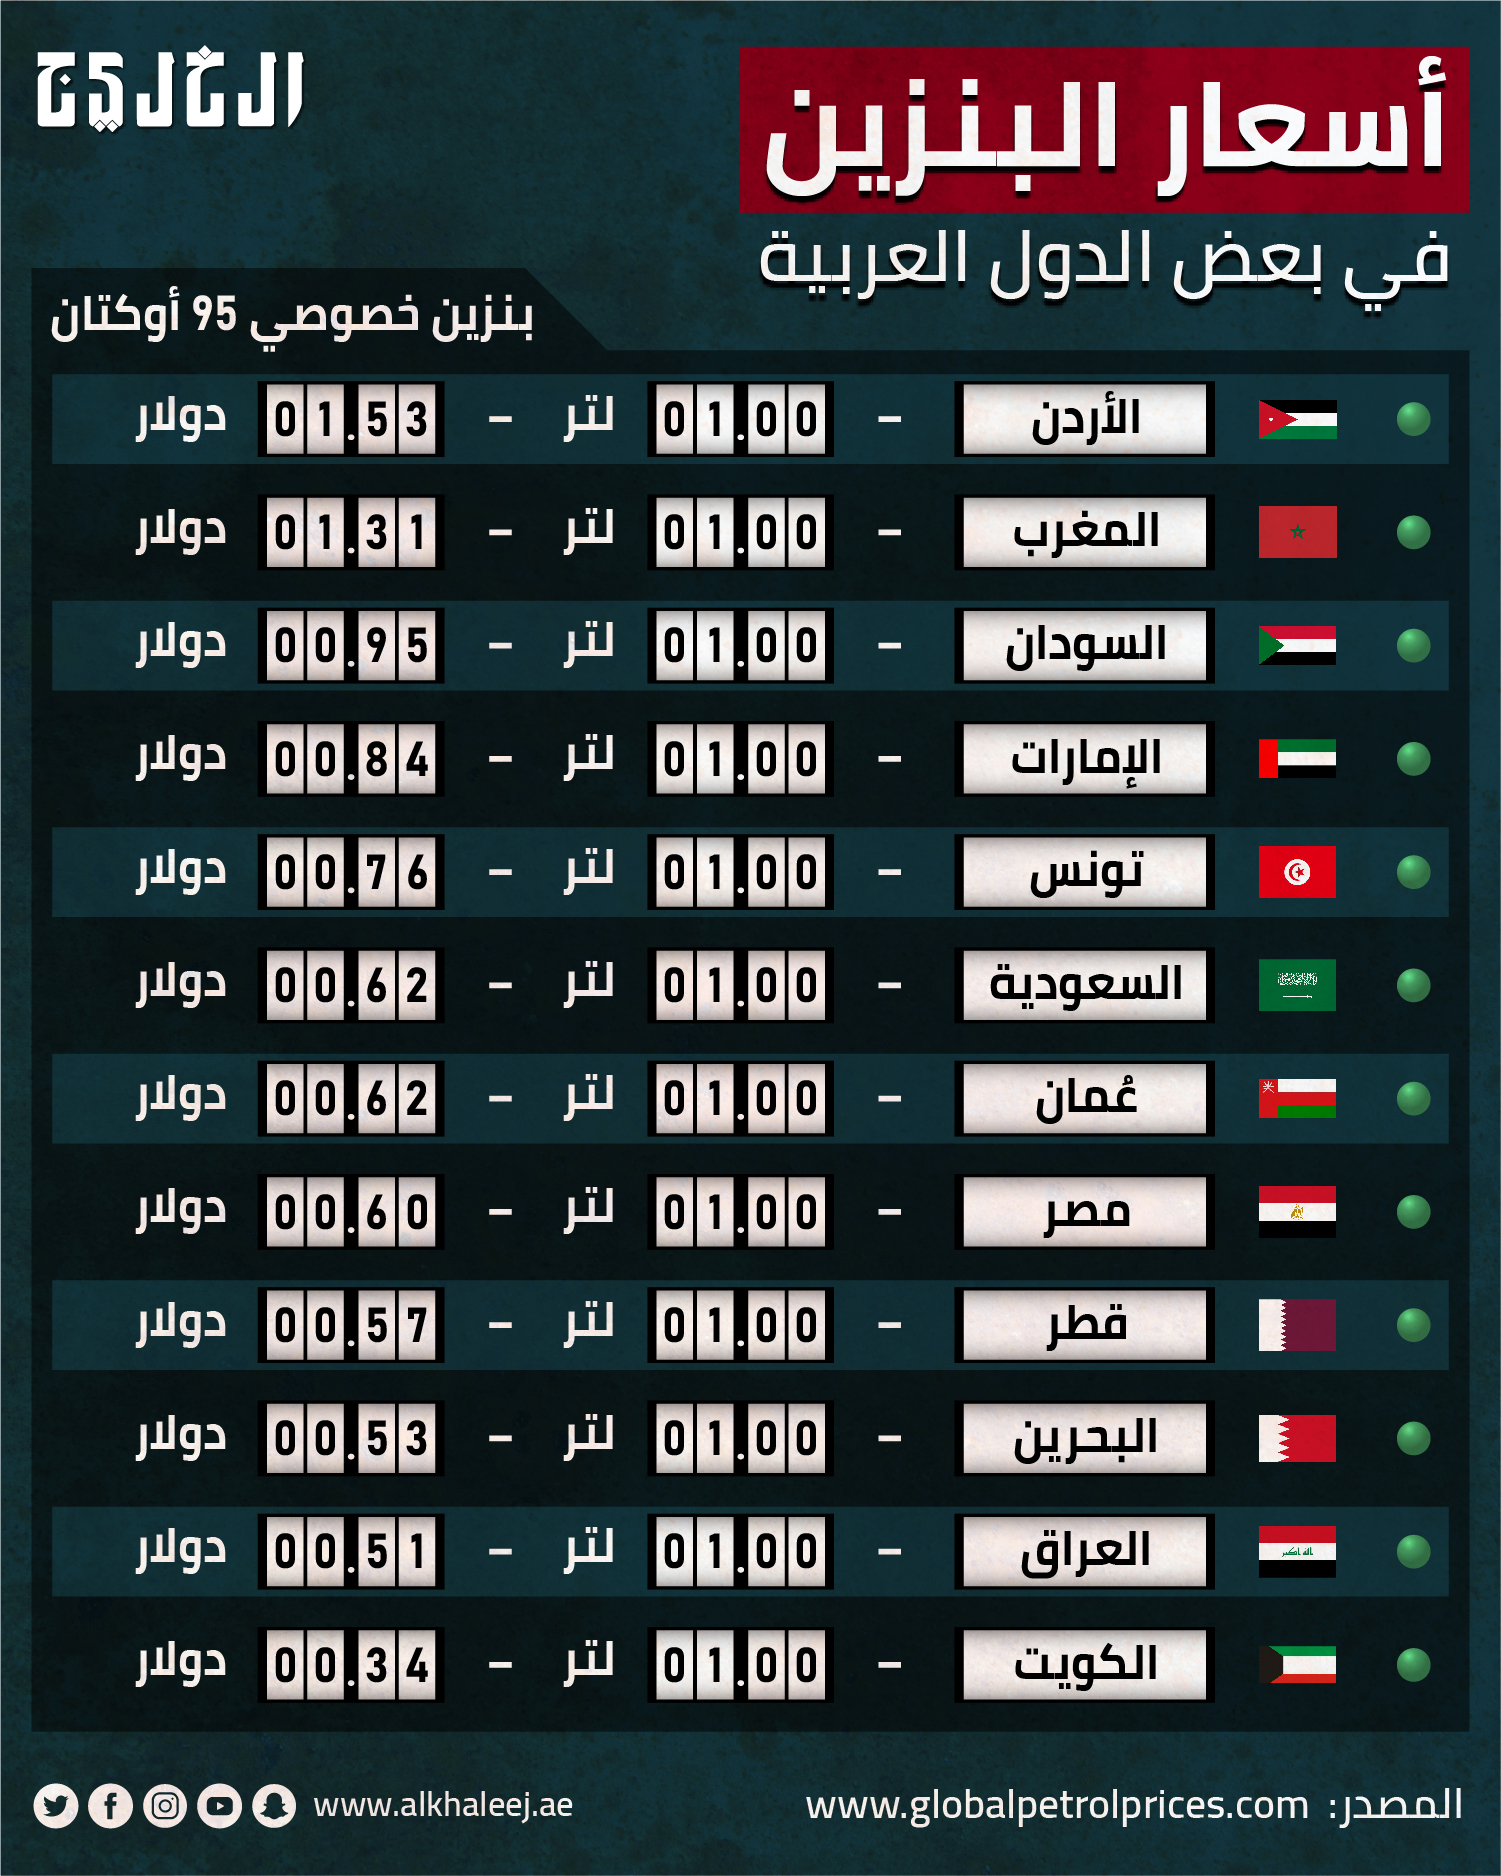 اسعار البنزين في دول الخليج